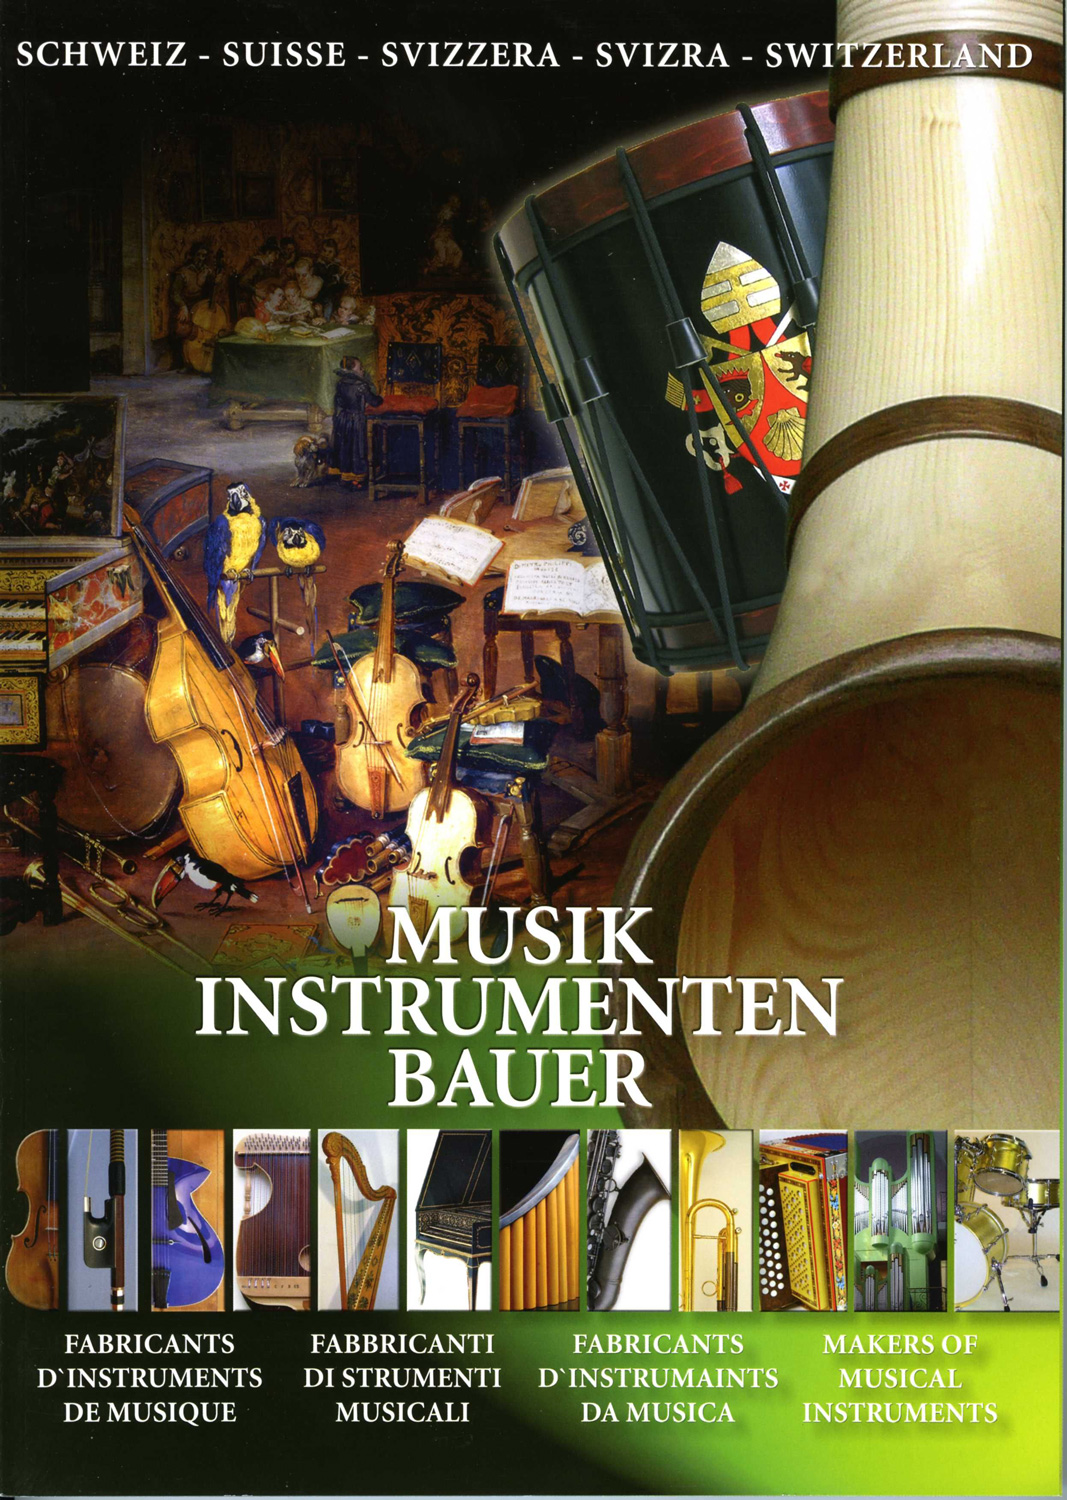 Frontseite Schweizer Instrumentenbau mit einem Kollegger Alphorn